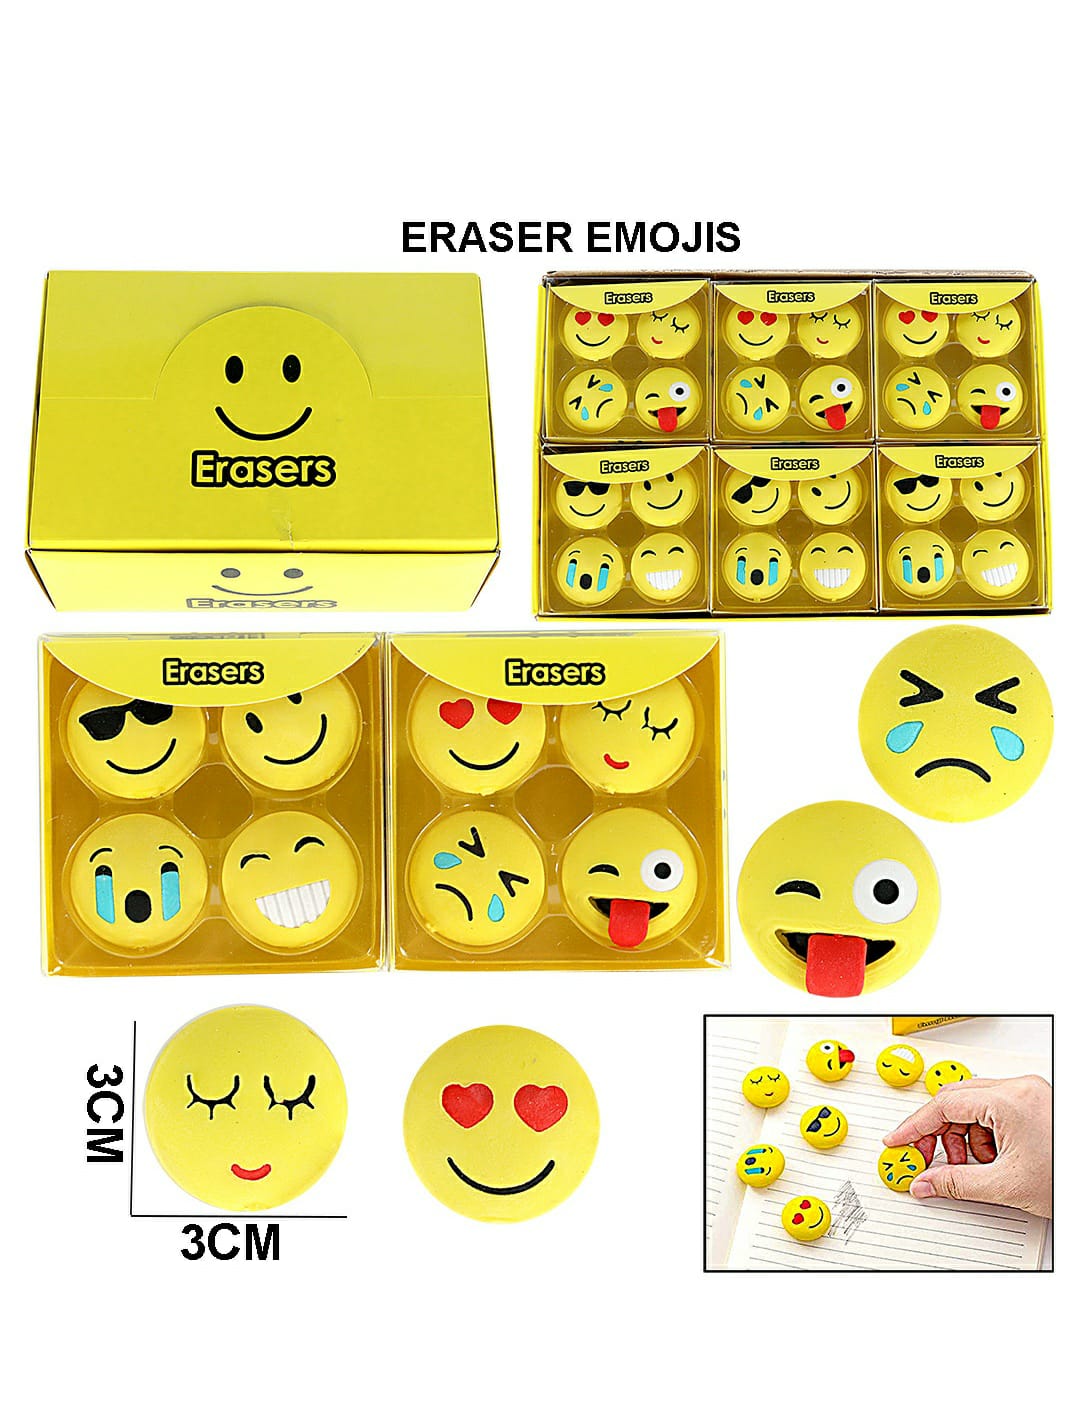 Eraser Emojis Raw1612-1 8406 | INKARTO